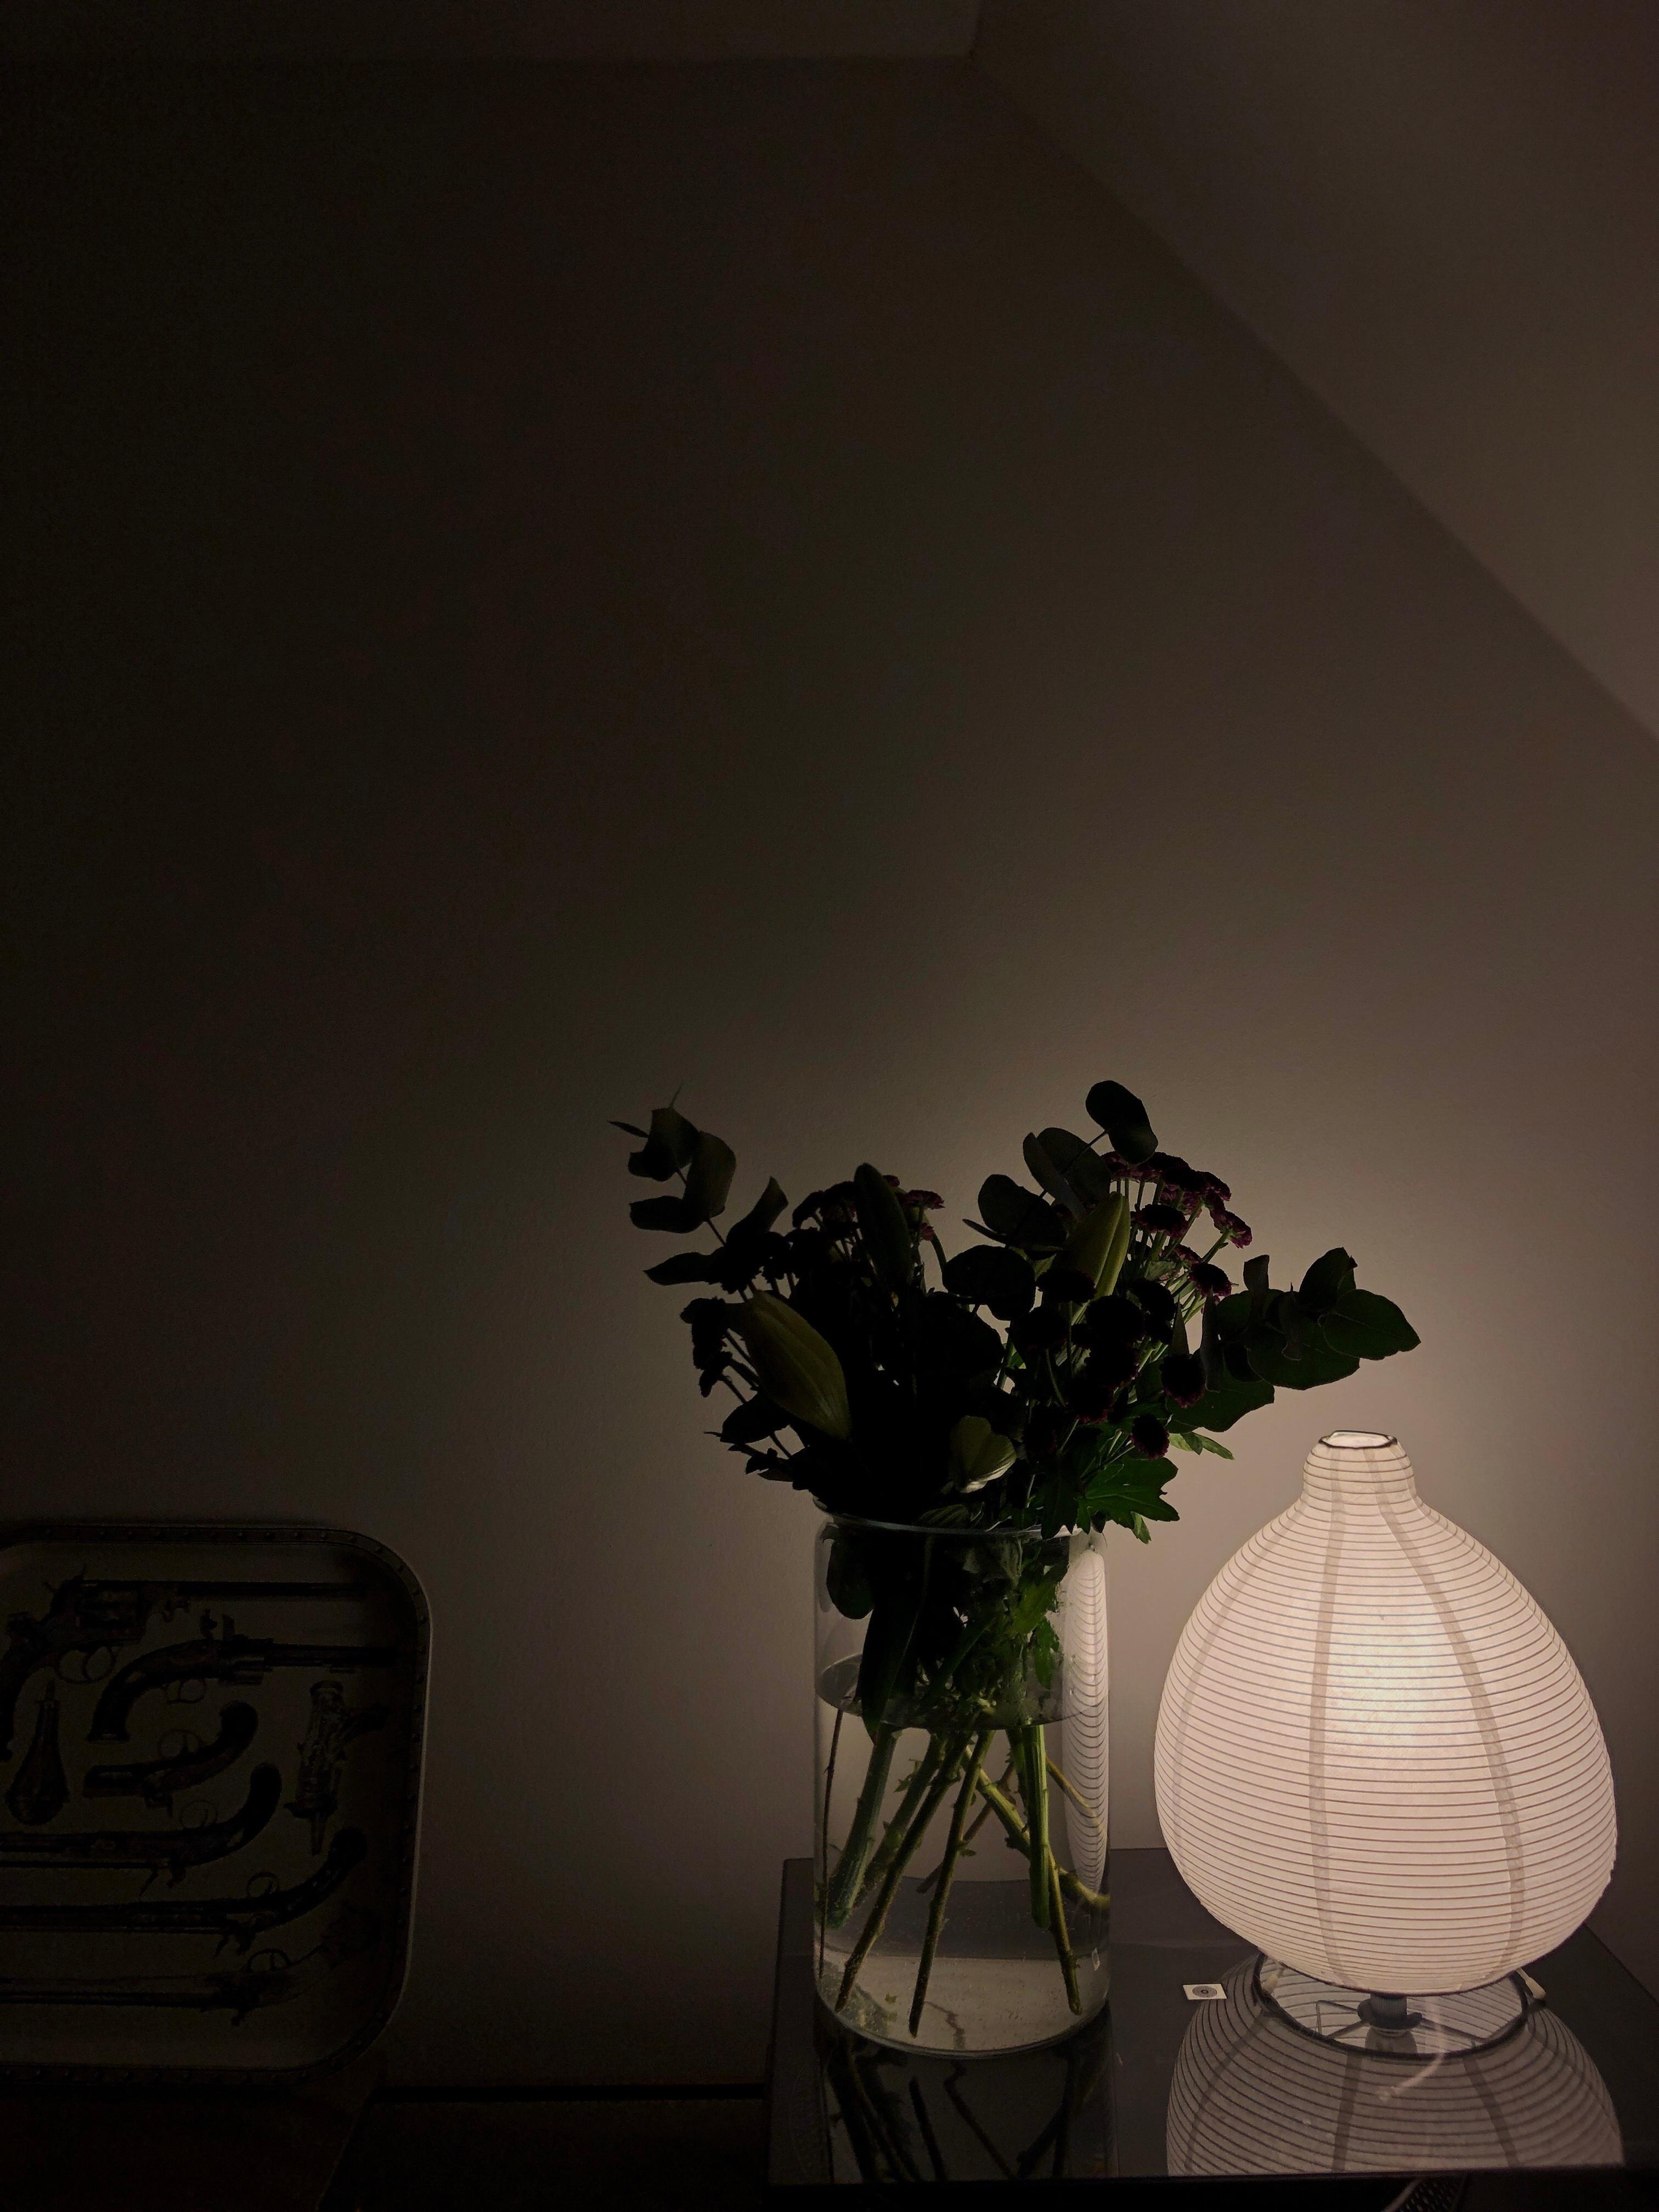 Lights on 🌙 und einen schönen Abend!
#lampe #papierlampe #hygge #interior #design #midcentury #wohnzimmer #couchstyle 